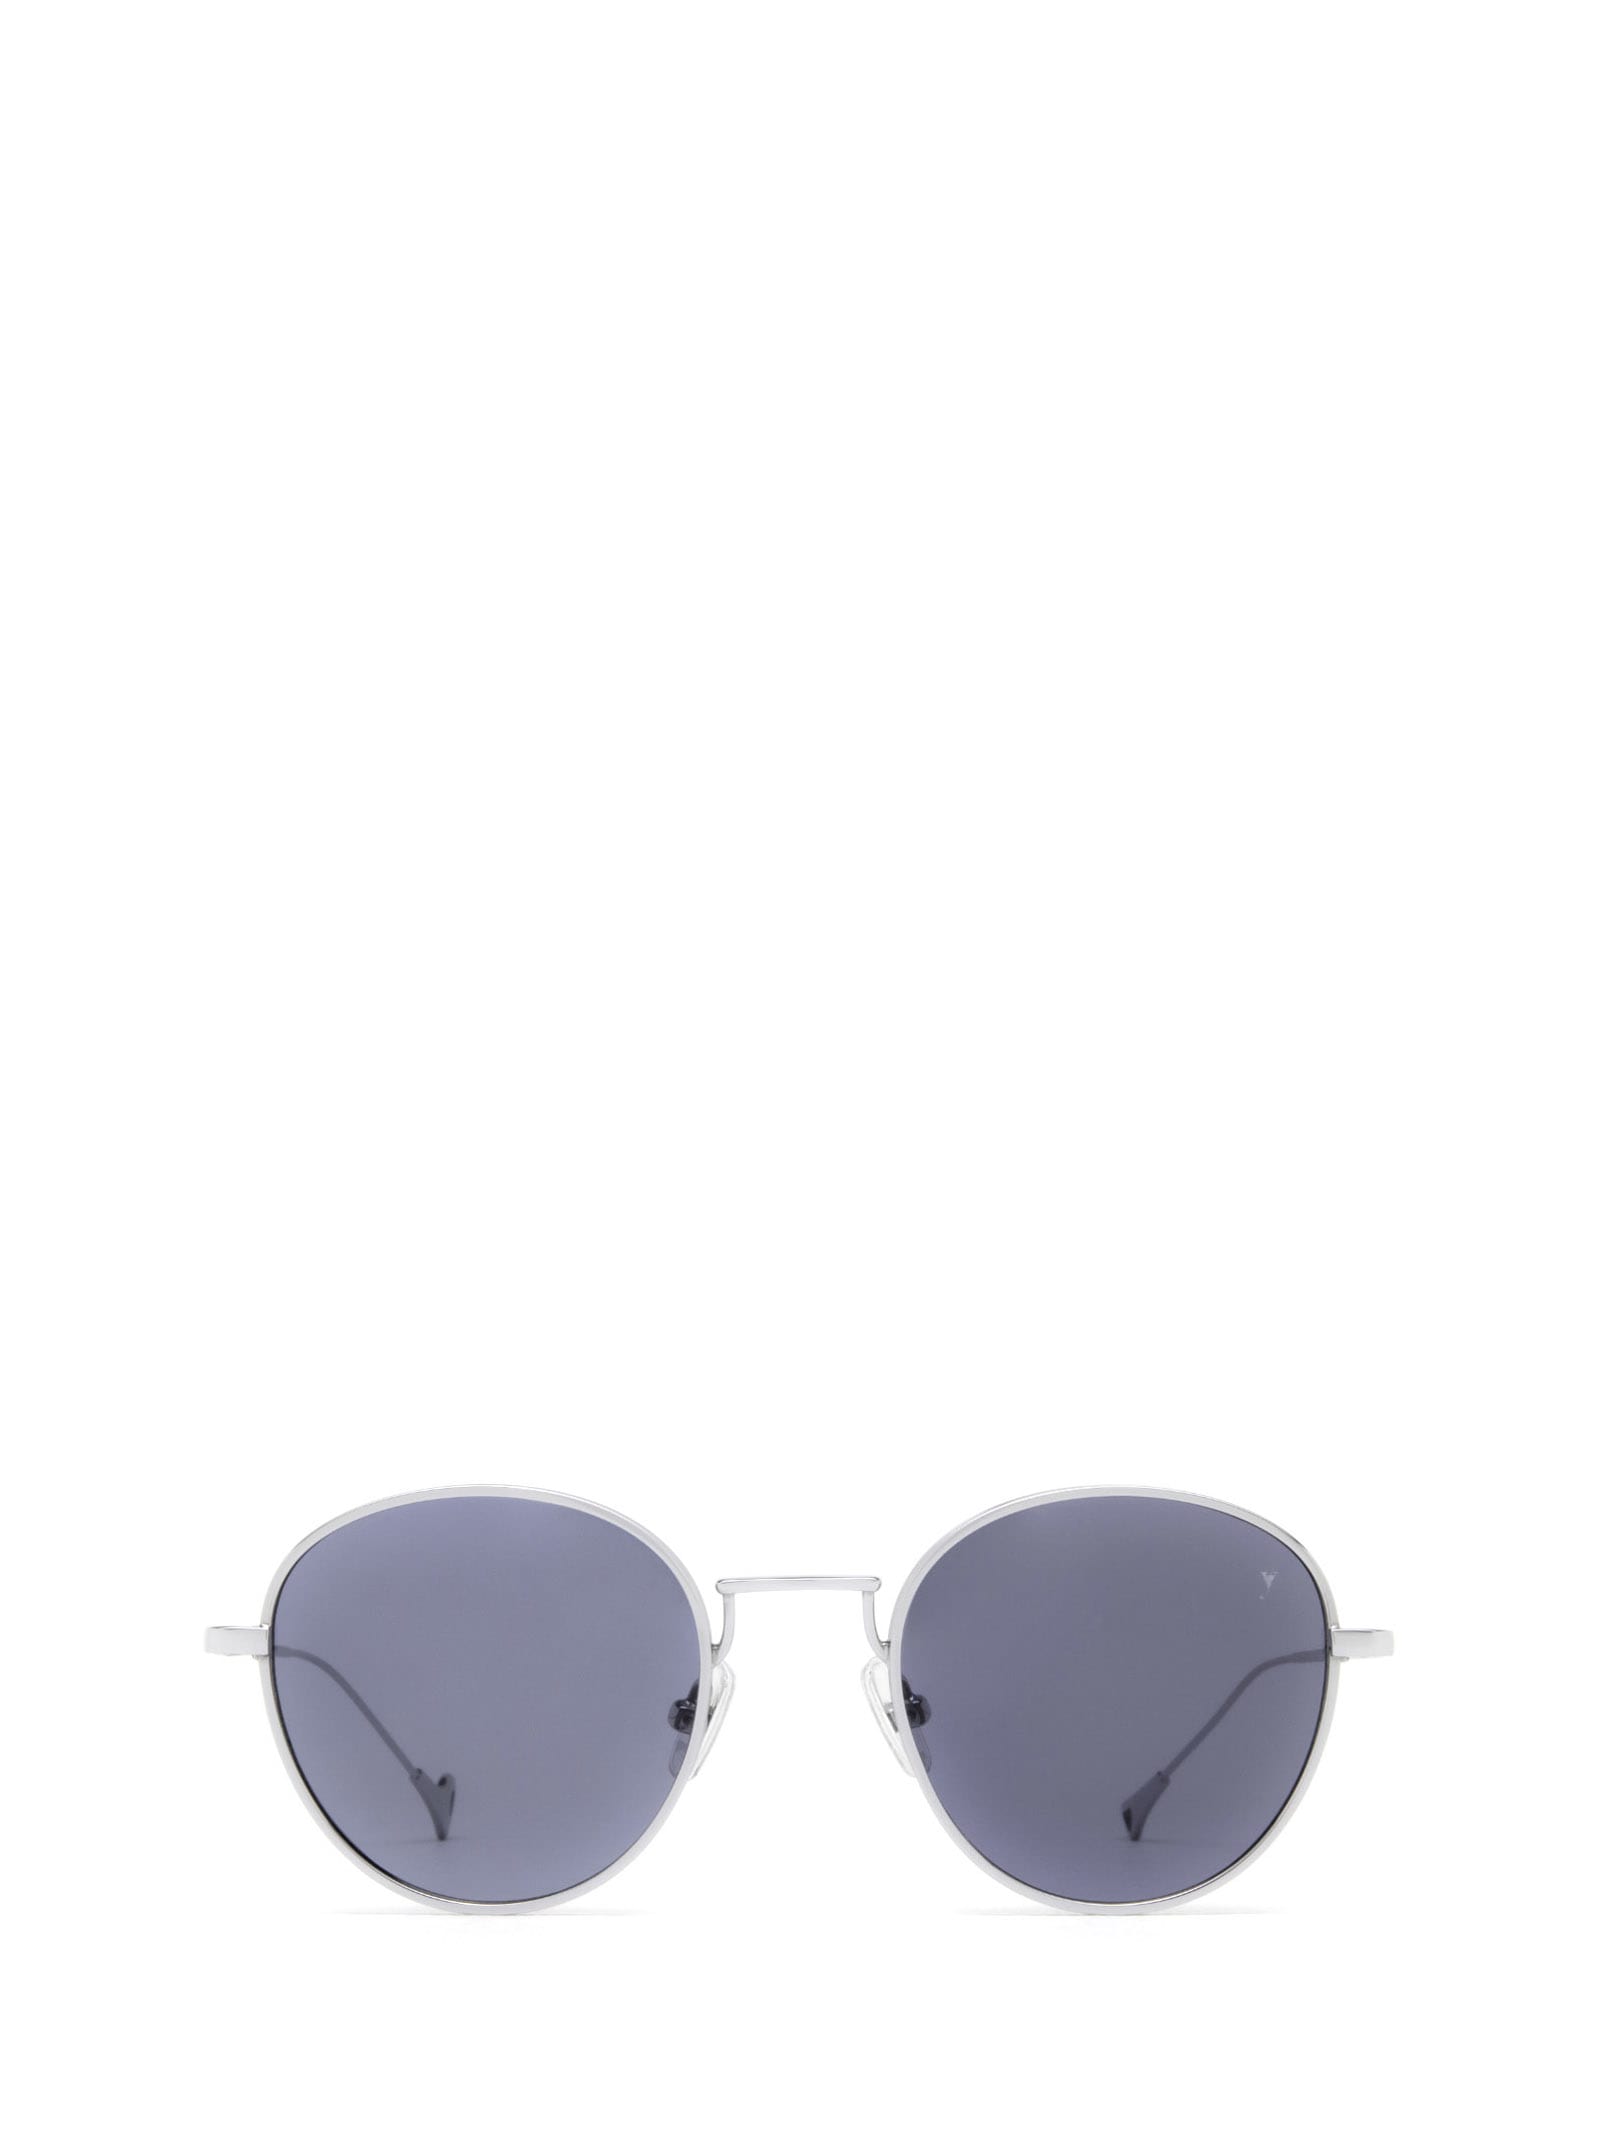 Alen Silver Sunglasses